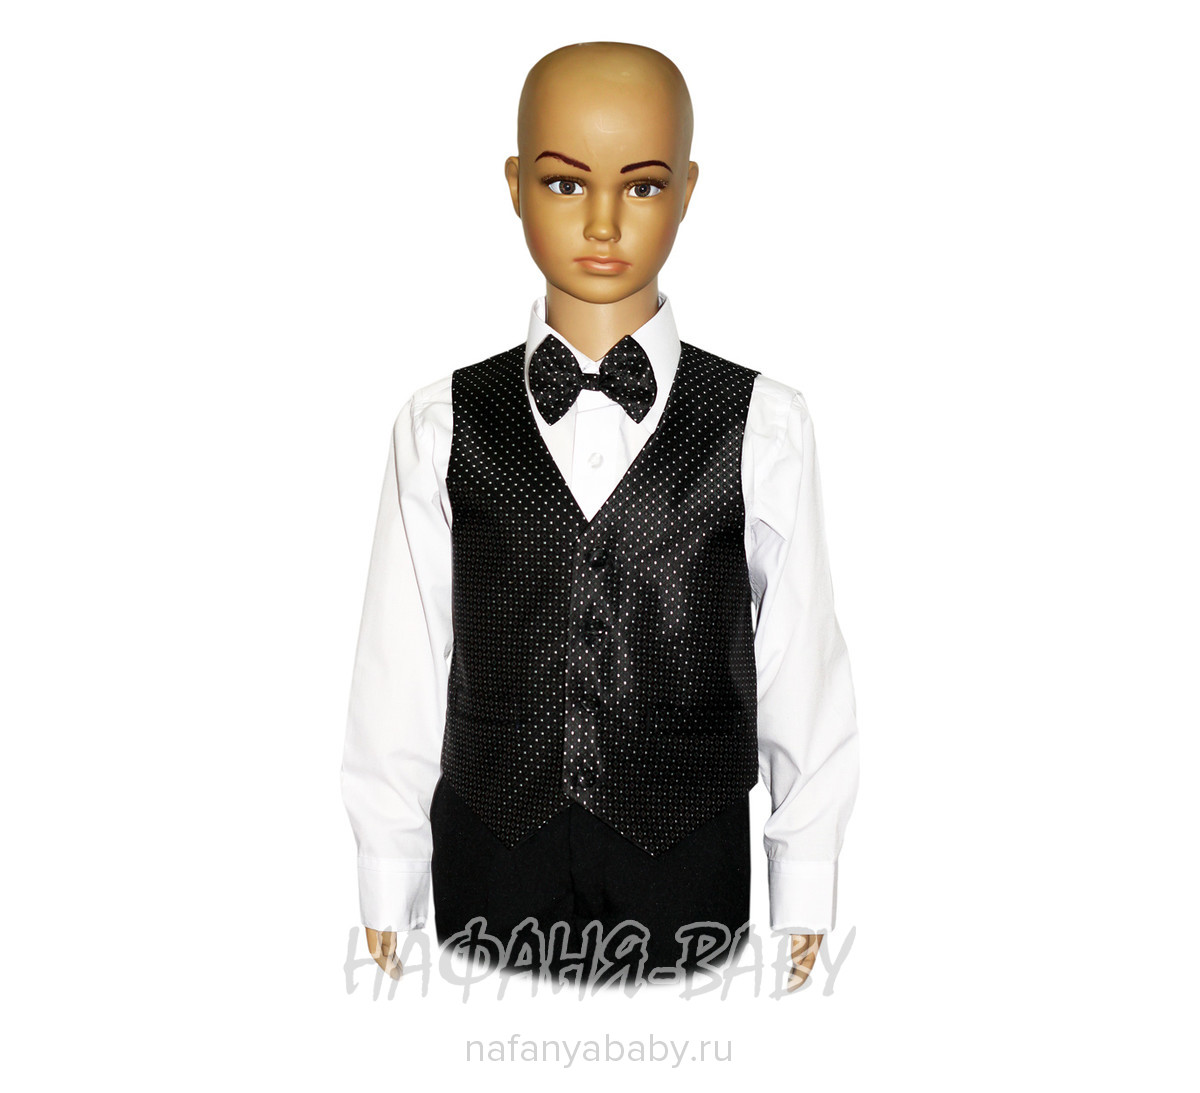 Детский костюм-тройка (жилет+рубашка+бабочка+брюки) YOUNG DANDY арт: 226, 1-4 года, 5-9 лет, цвет черный в белую крапинку, оптом Китай (Пекин)